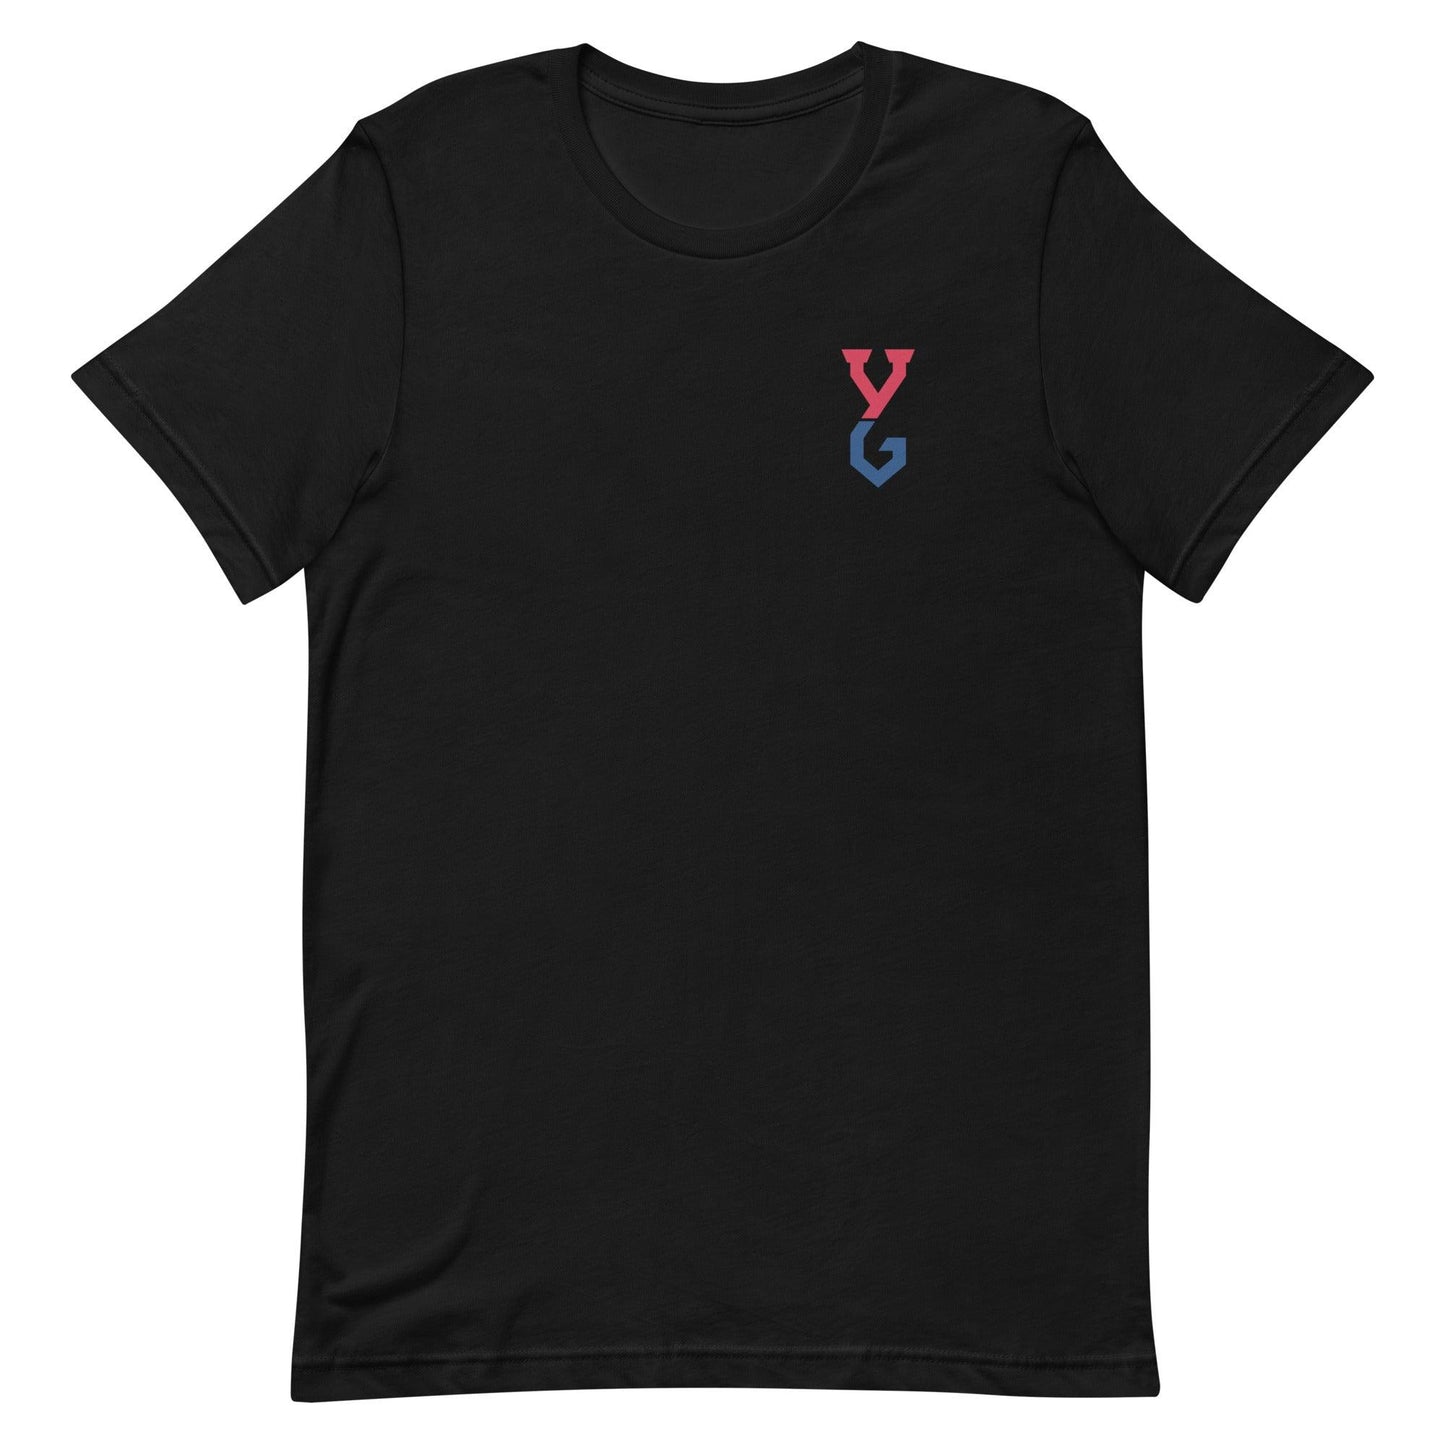 Yan Gomes "Essential" t-shirt - Fan Arch